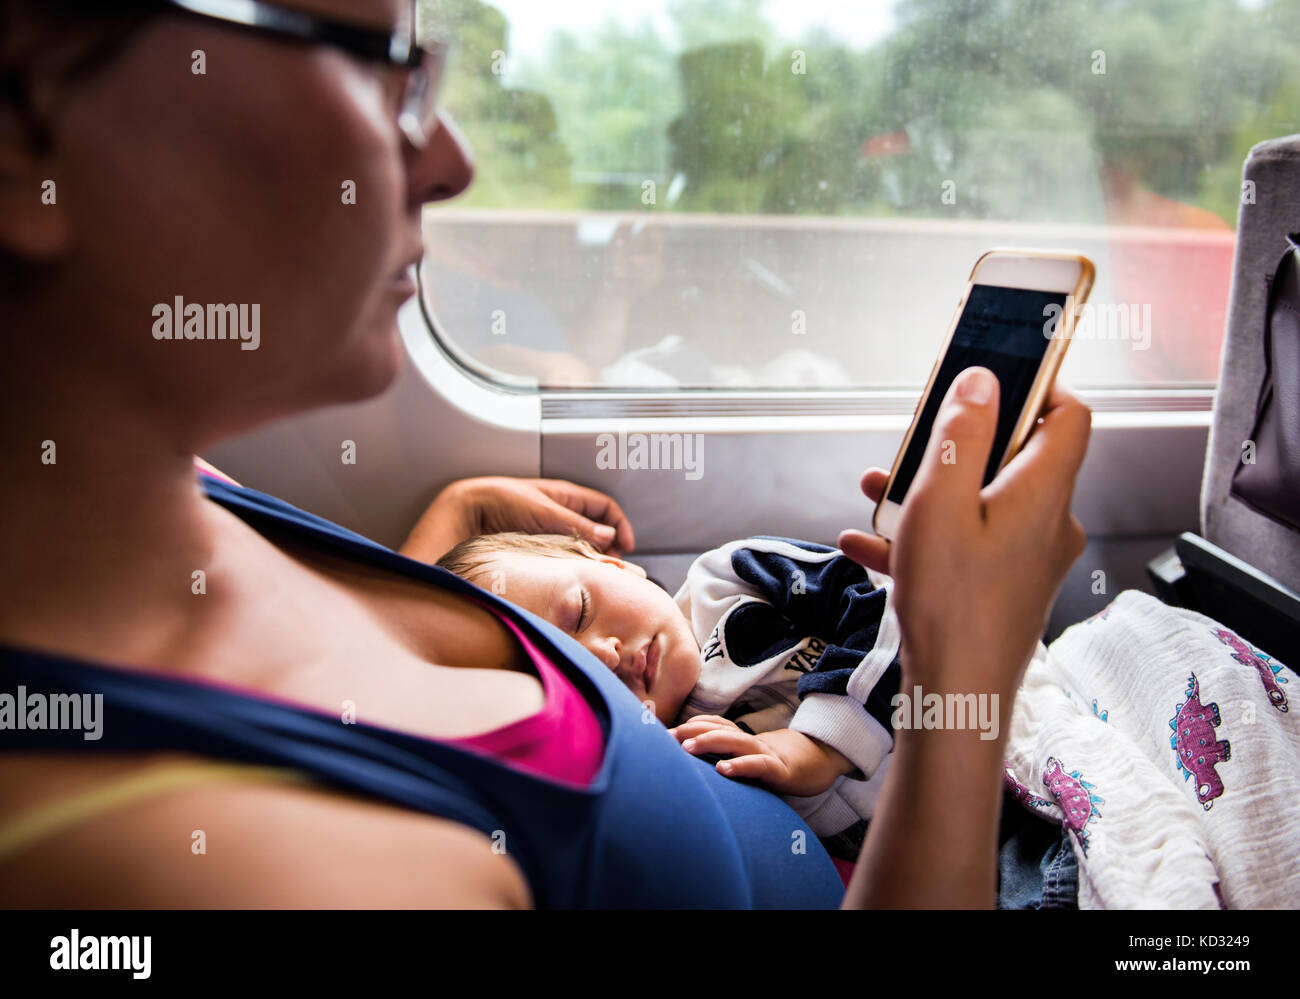 Mère et son jeune fils voyageant en train, fils dormir, mère looking at smartphone Banque D'Images